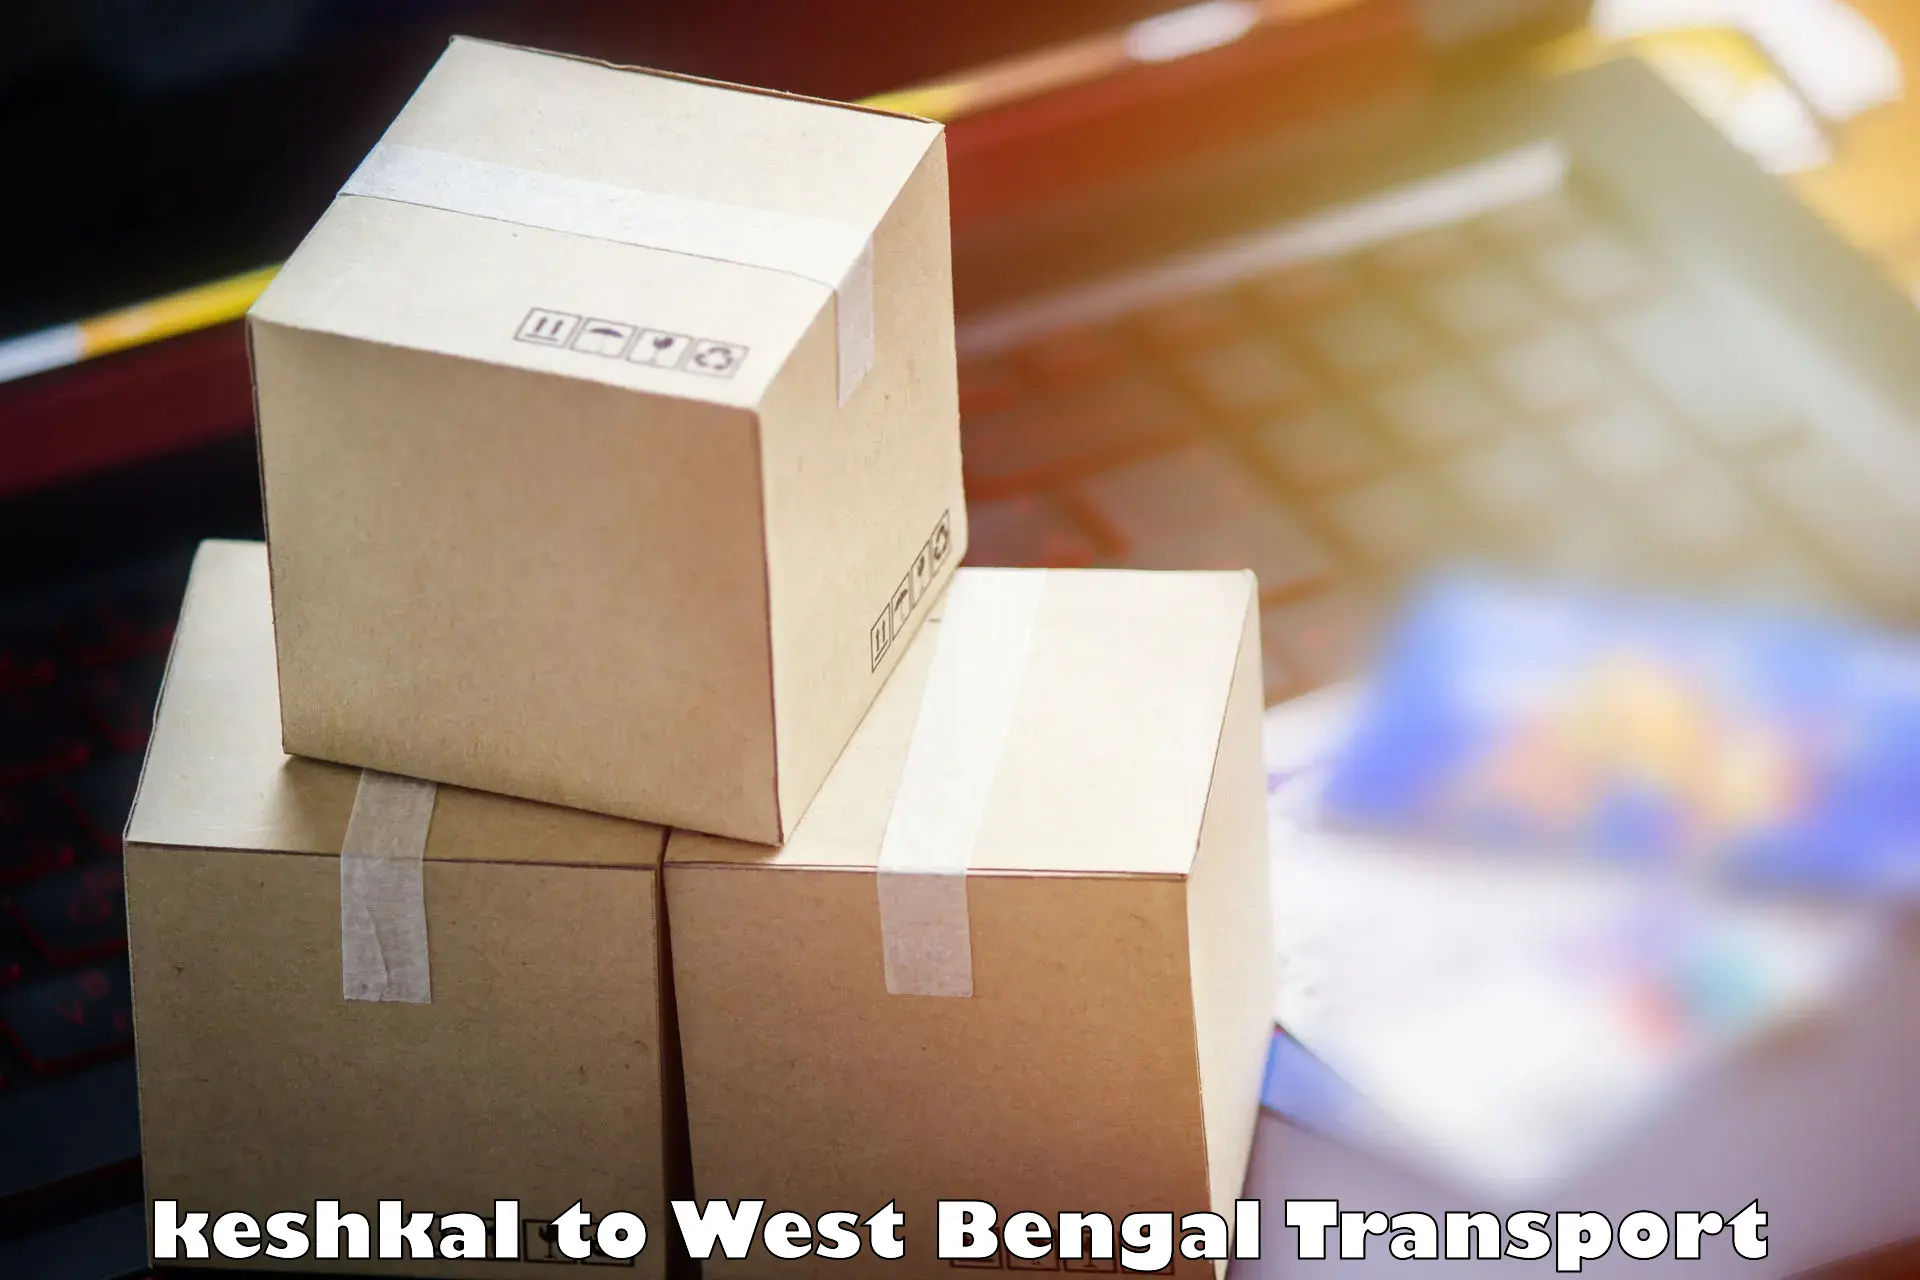 Transportation solution services keshkal to Darjeeling